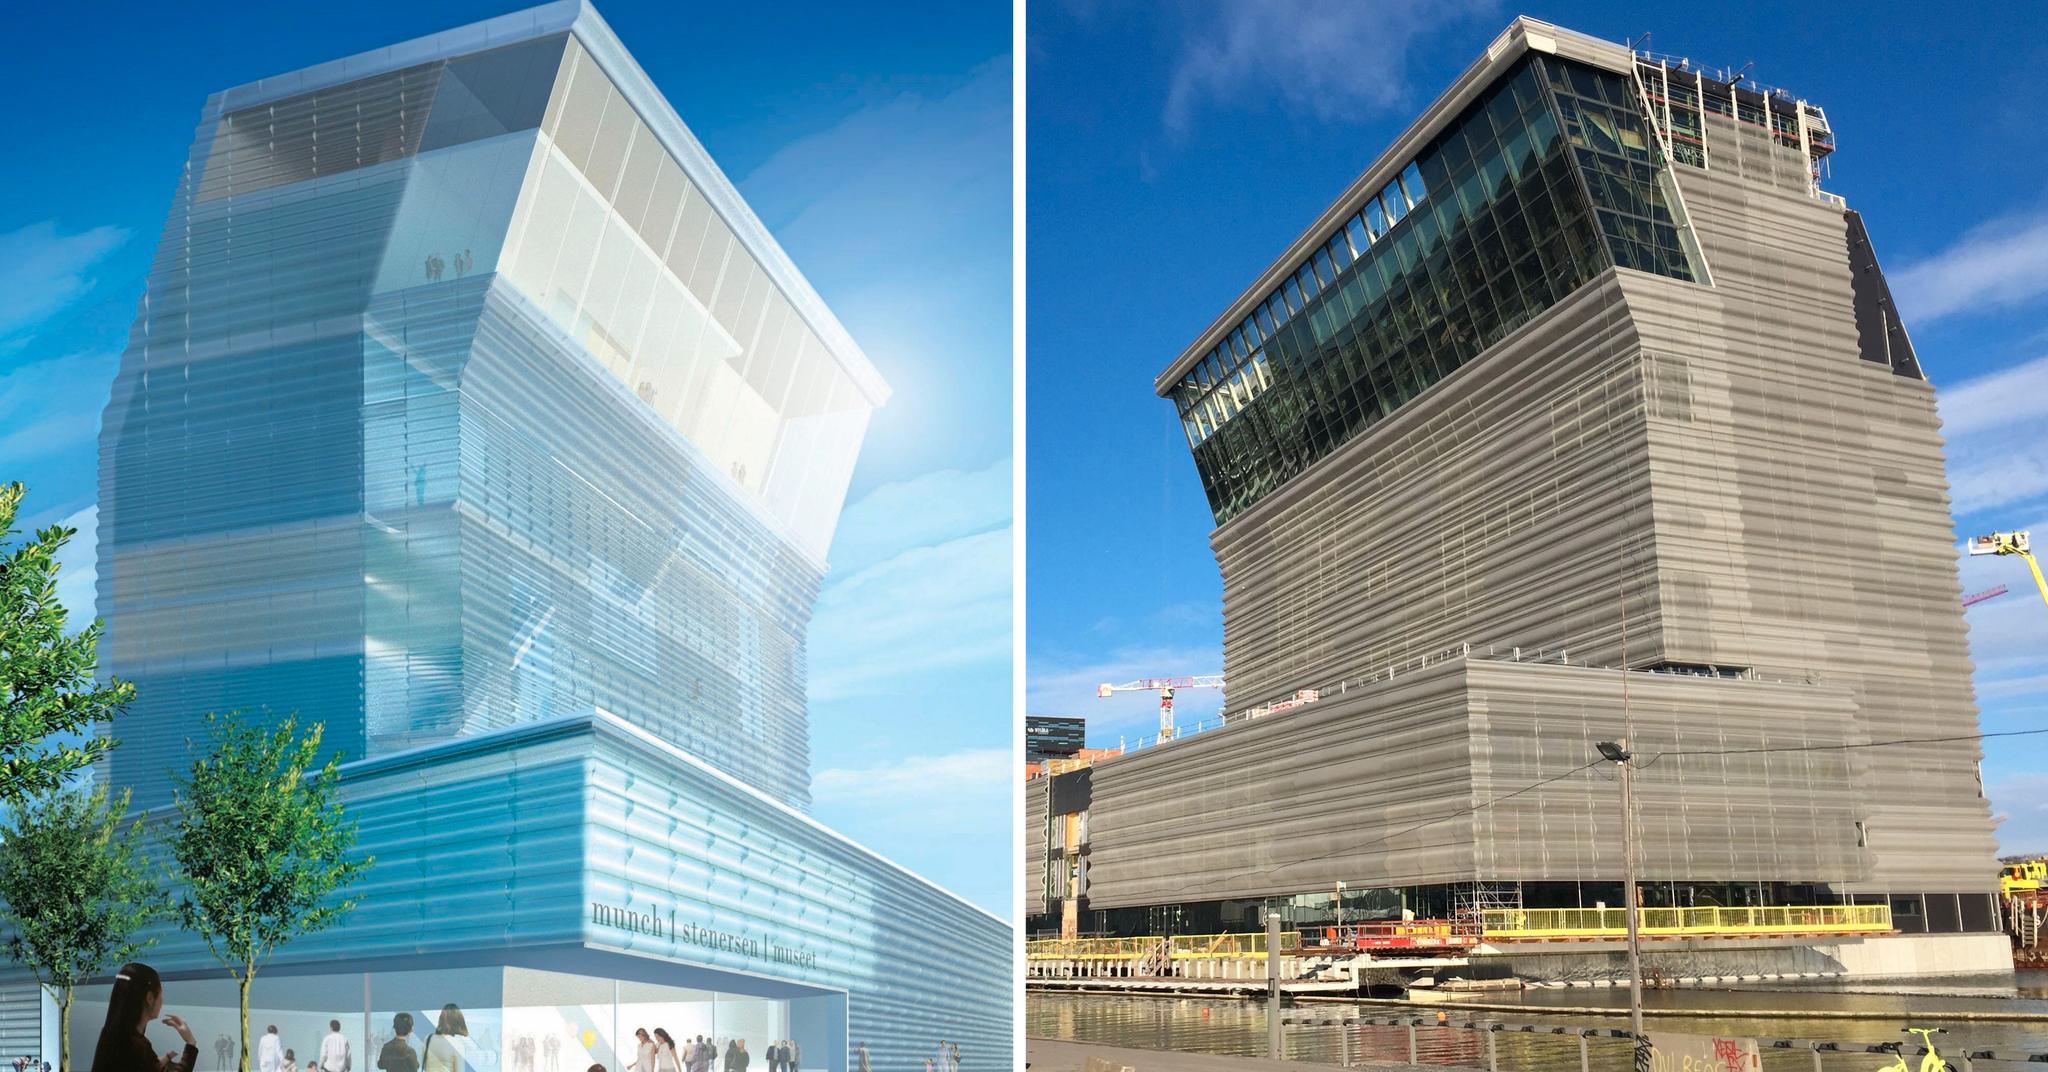 På bildet til venstre er Lambda slik det ble presentert 2009. Et «lystårn», ifølge juryen. Bildet til høyre viser bygget slik det fremstår fredag 8. mars 2019.